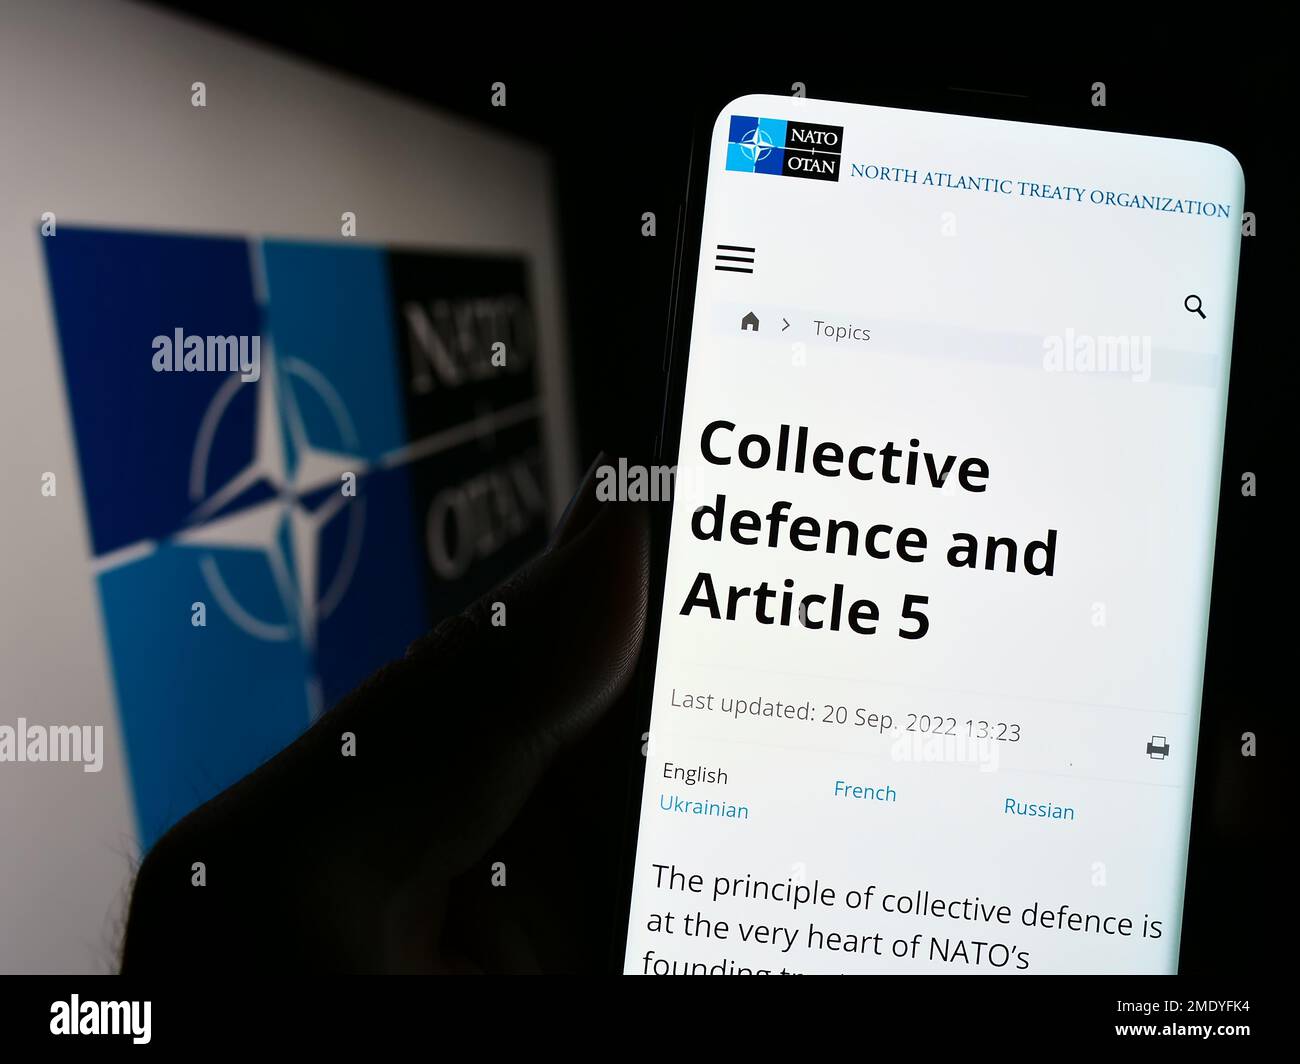 Persona che tiene il cellulare con la pagina web della NATO (North Atlantic Treaty Organization) sullo schermo di fronte al logo. Messa a fuoco al centro del display del telefono. Foto Stock